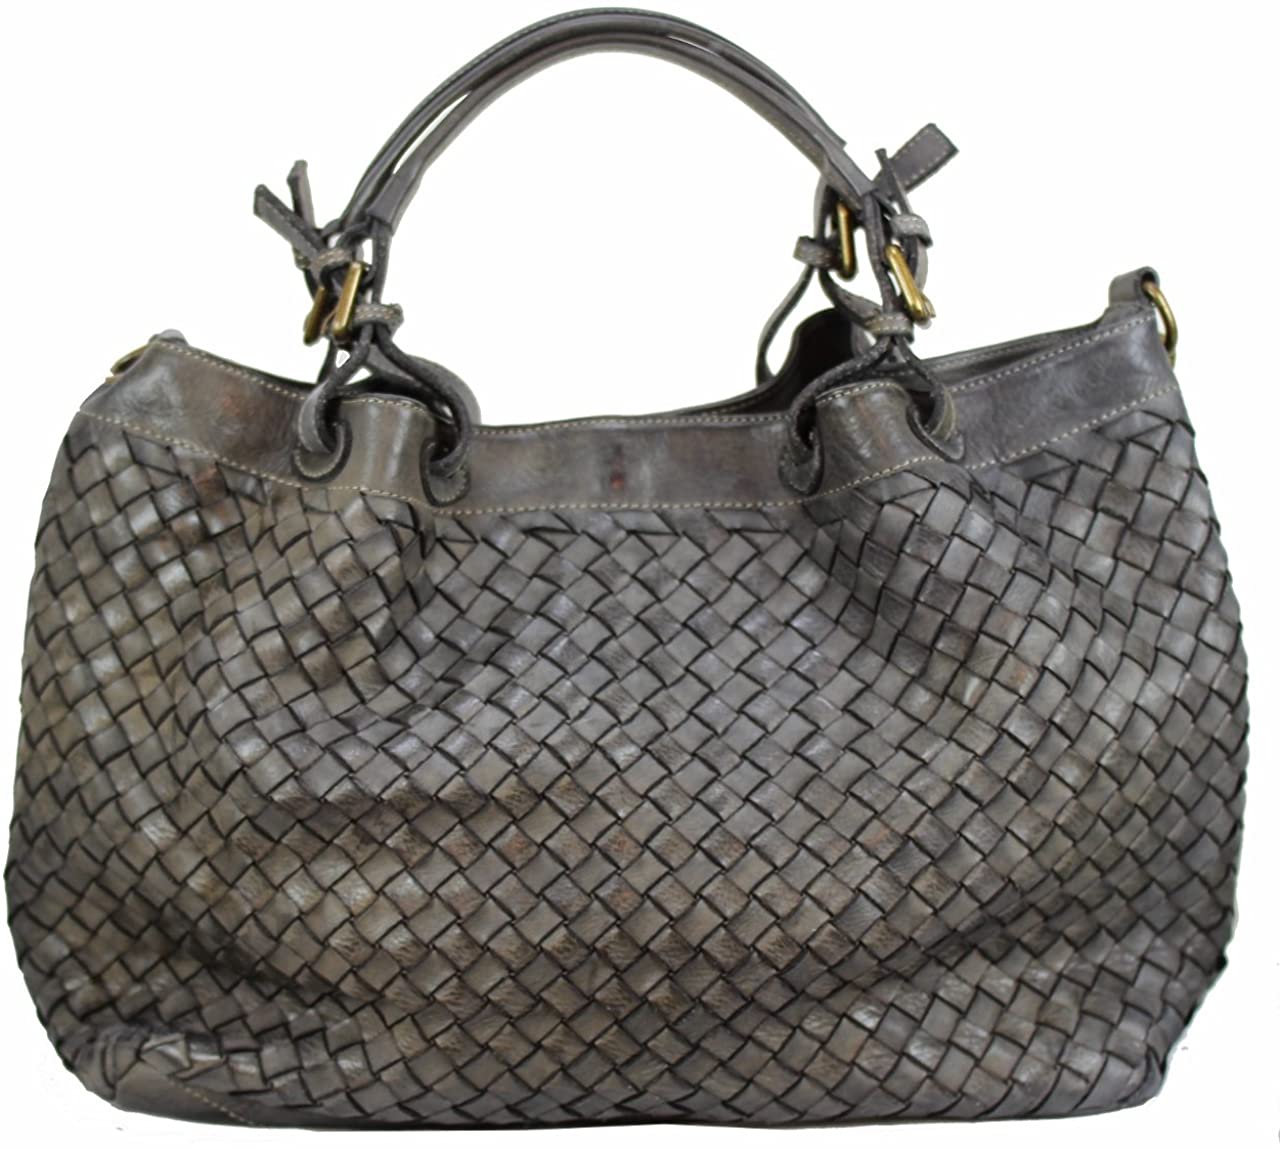 BZNA Bag Fina small grau Lederfarben Italy Designer Damen Handtasche Schultertasche Tasche Schafsleder Shopper Neu